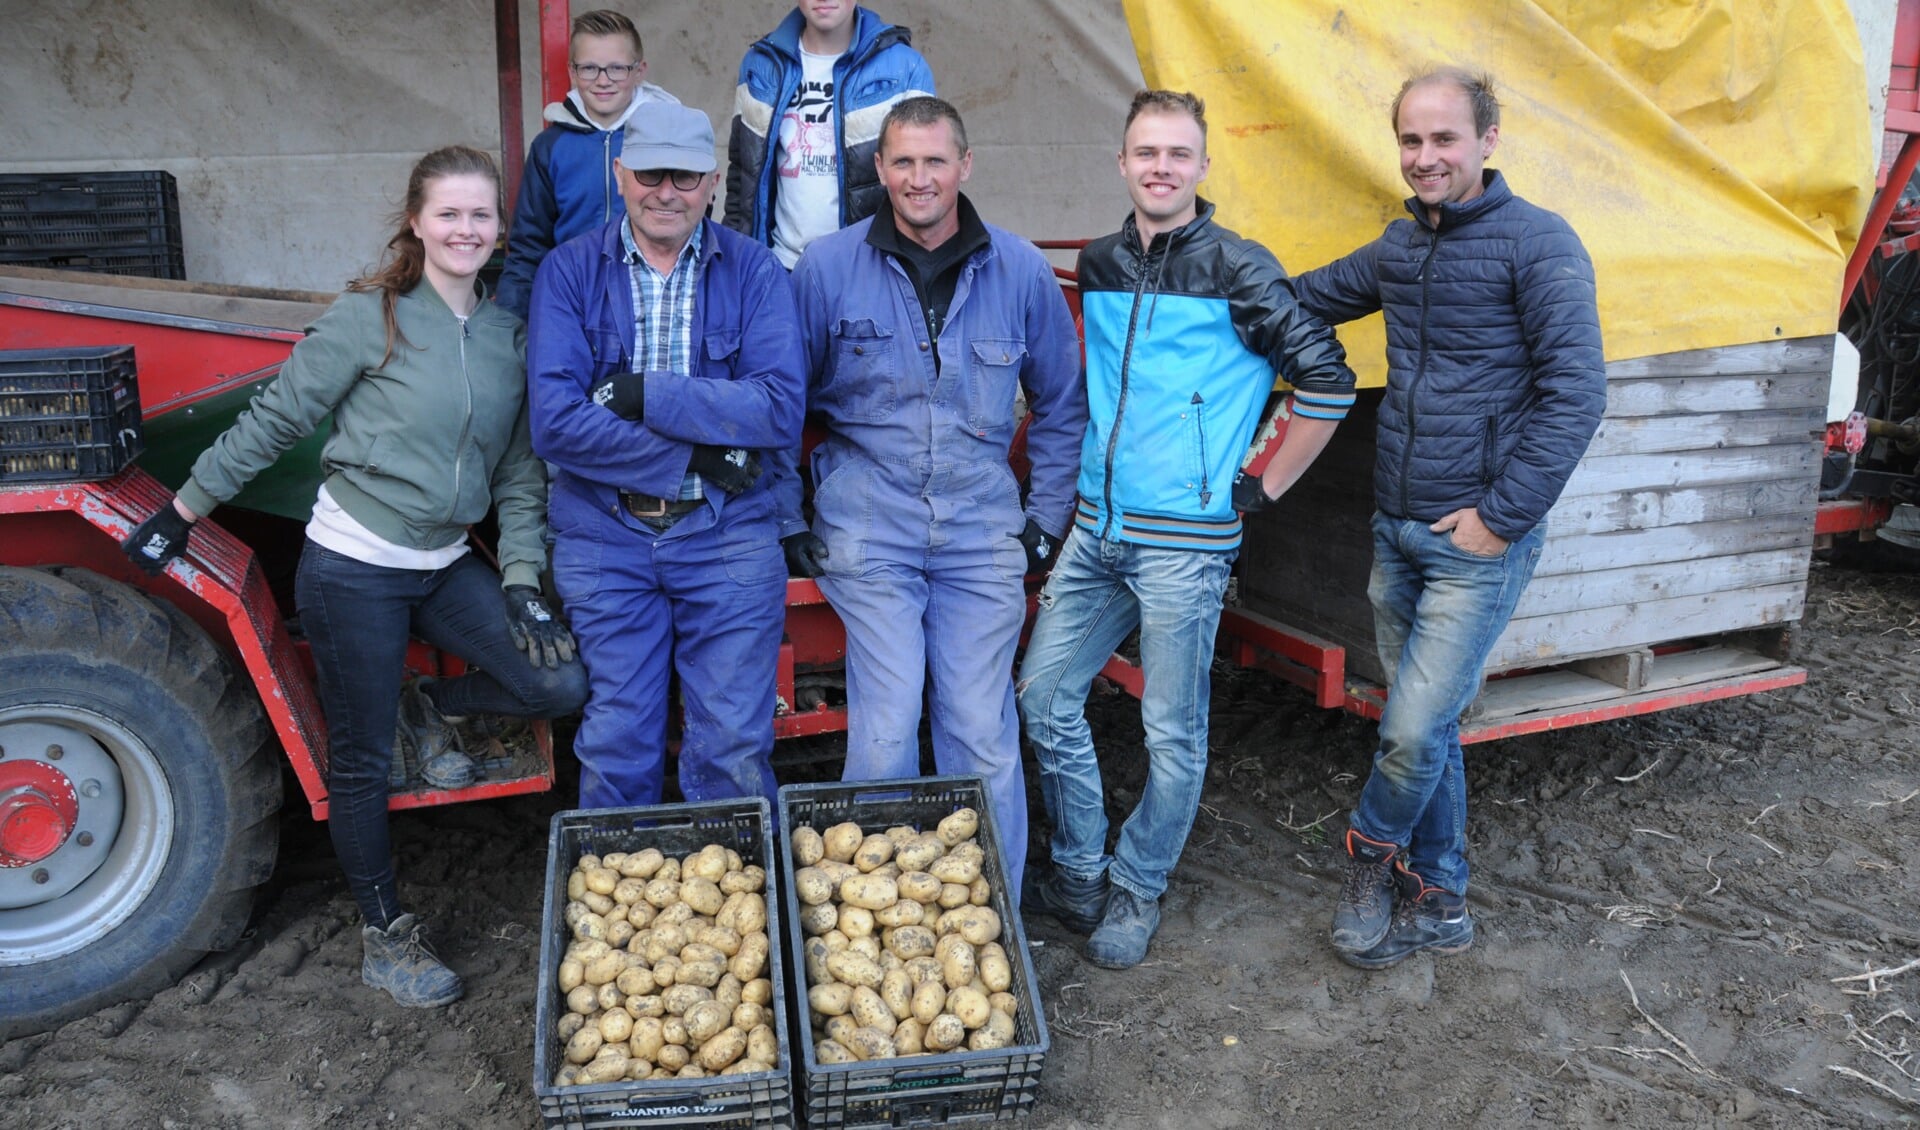 Allemaal Lindhoutjes. Het rooien van de nieuwe aardappelen aan de Krokkeweg in Poortvliet is een familiegebeuren. De kinderen en kleinkinderen van
Bram Lindhout (petje) zijn dinsdagavond paraat, v.l.n.r. Rosanne, Robin, Gerben, Brian, William en Marcel.